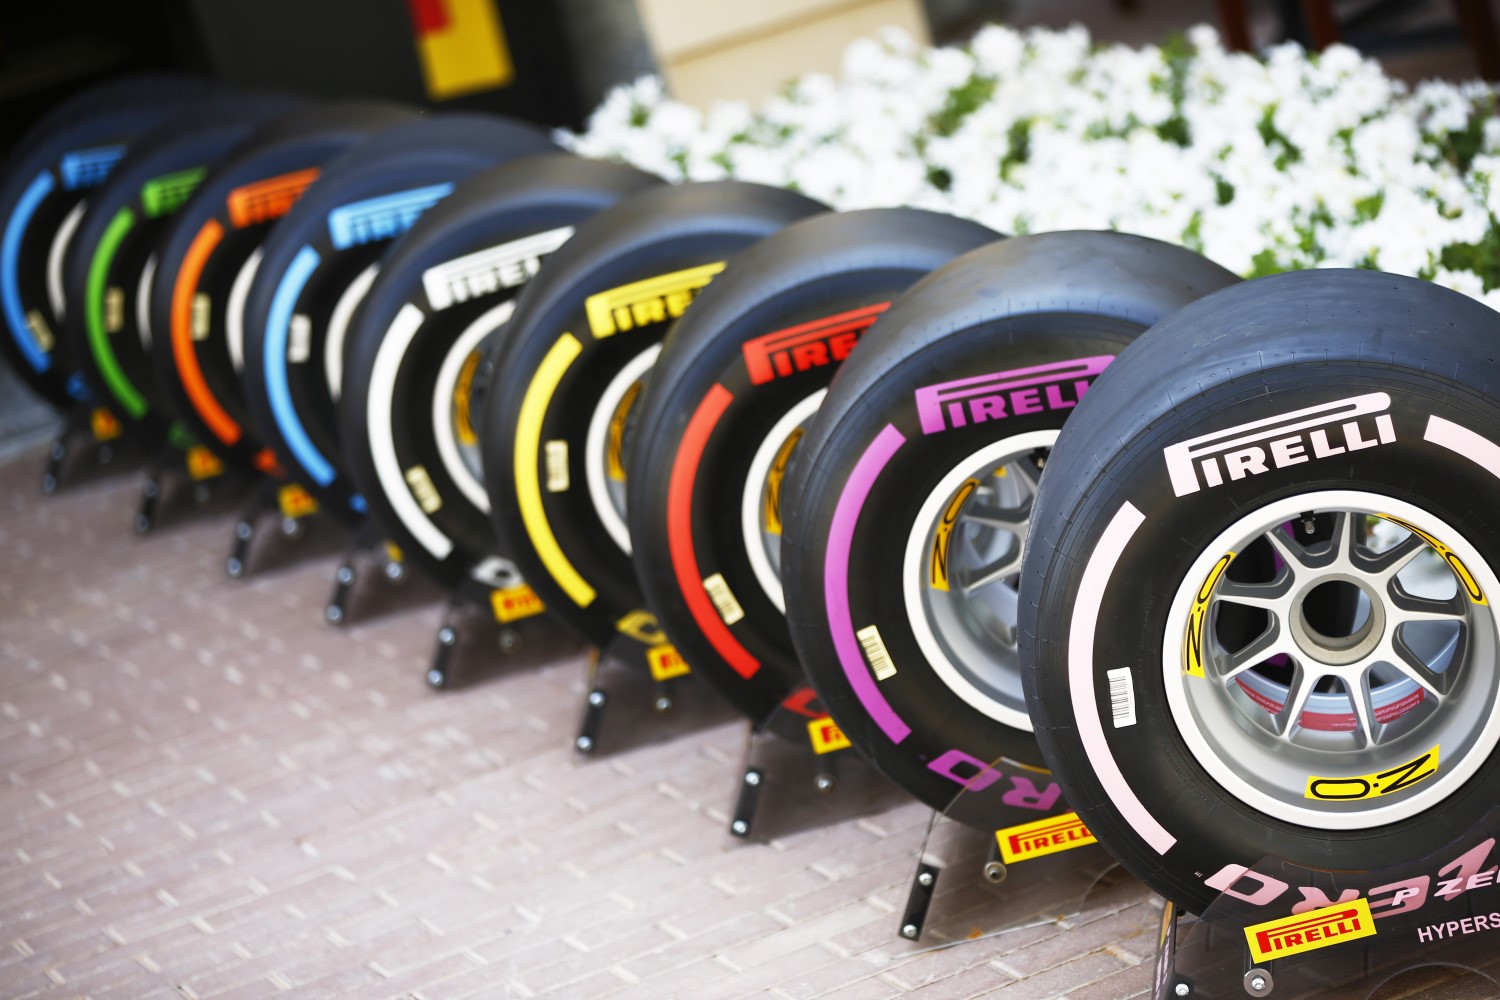 2018 Pirelli tires